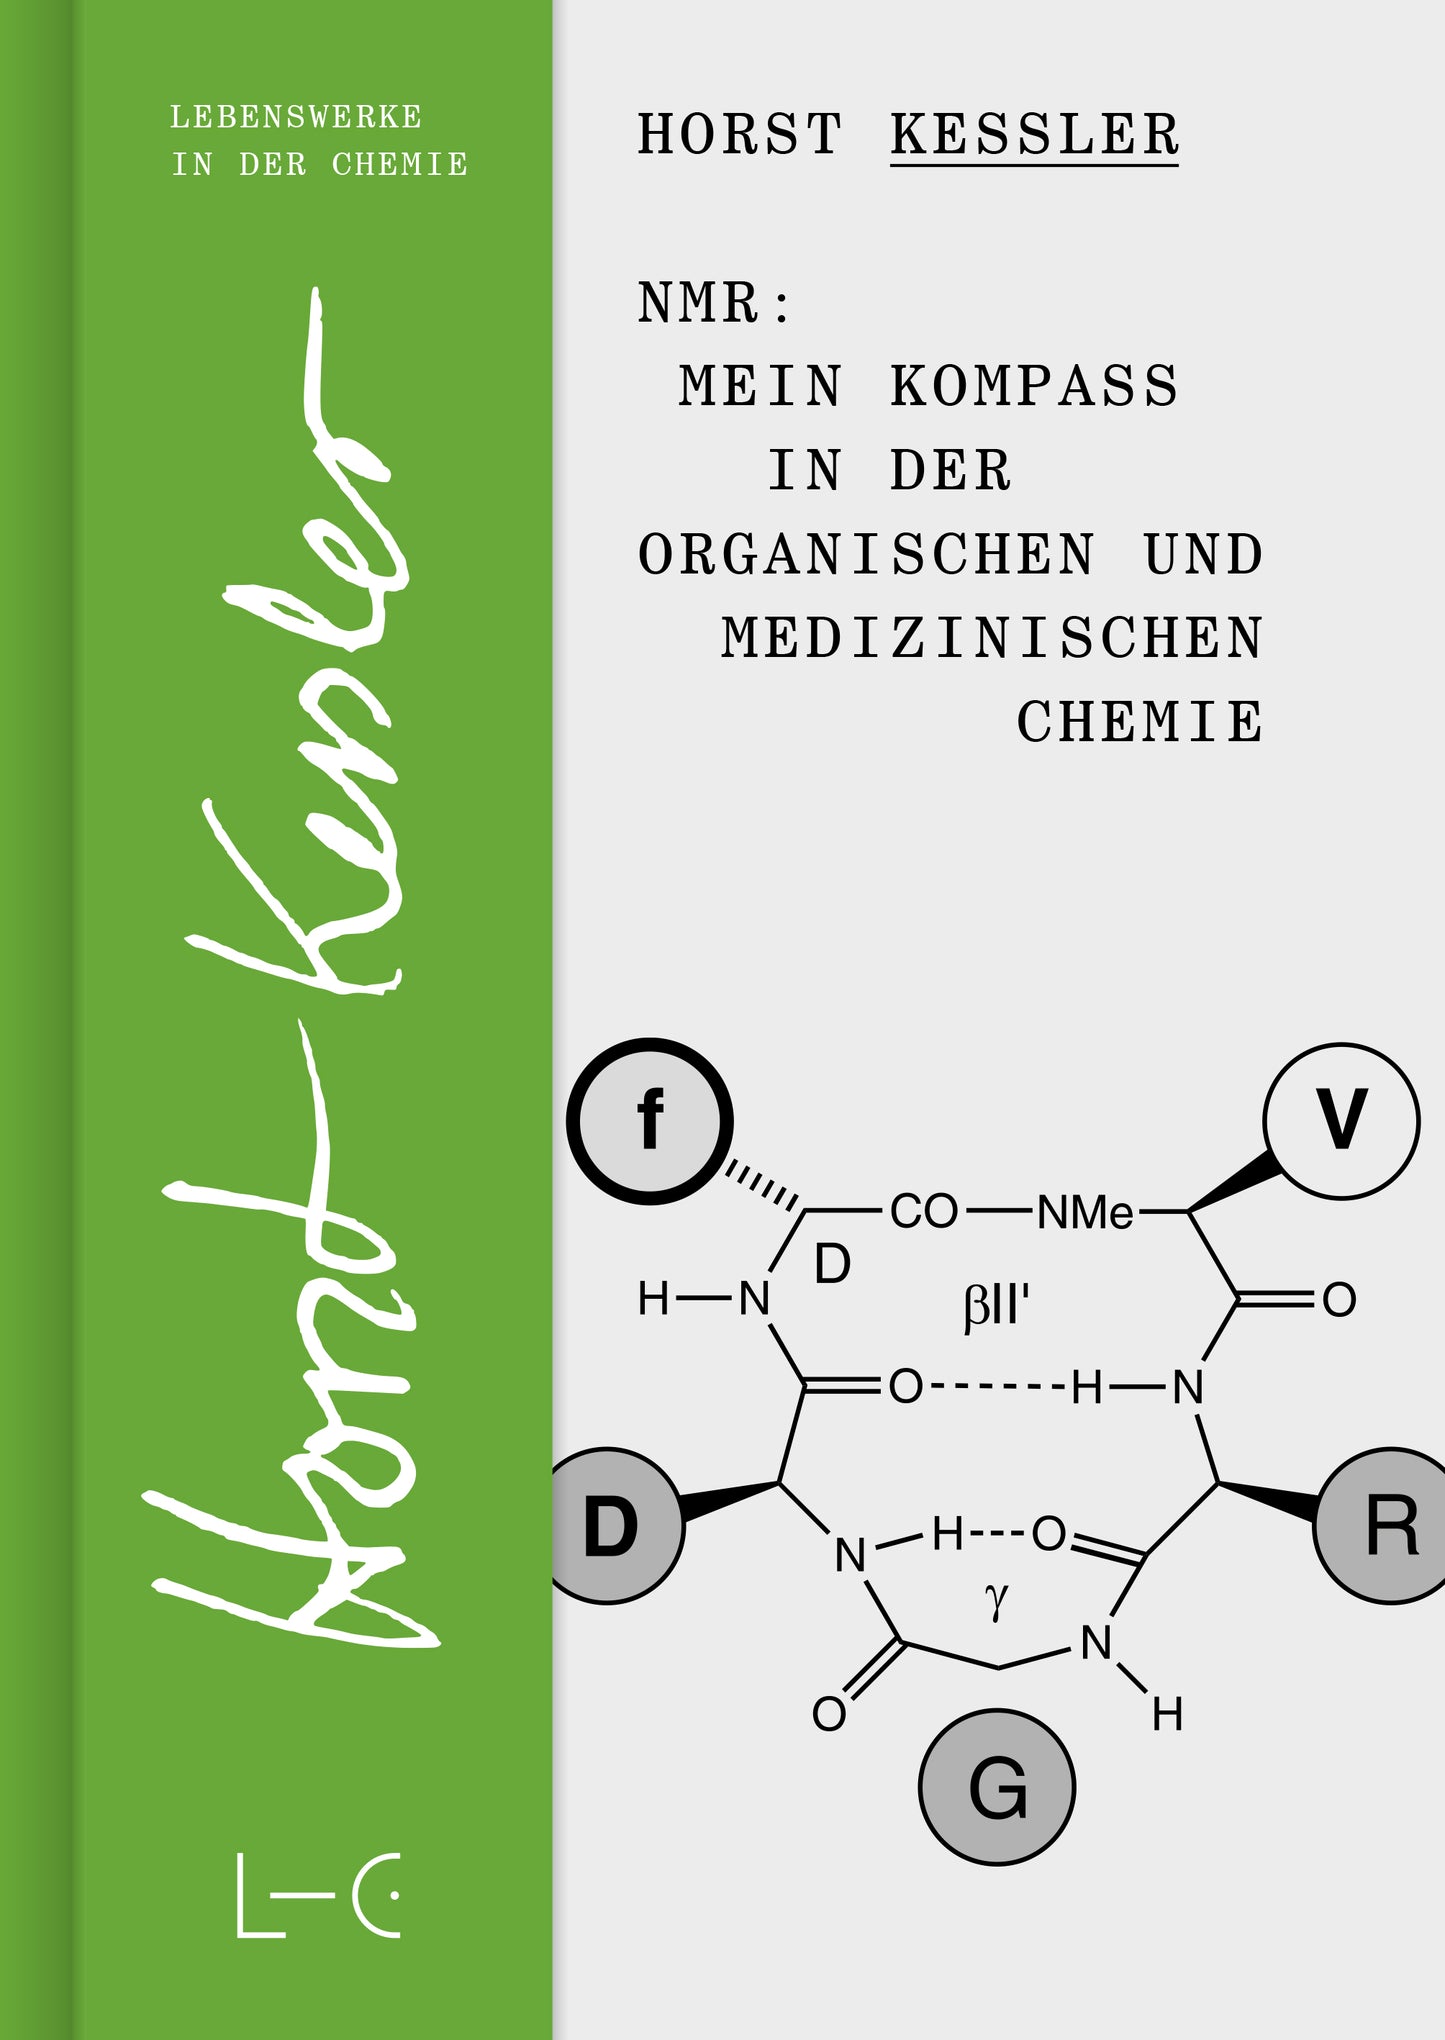 Horst Kessler, NMR: Mein Kompass in der Organischen und Medizinischen Chemie